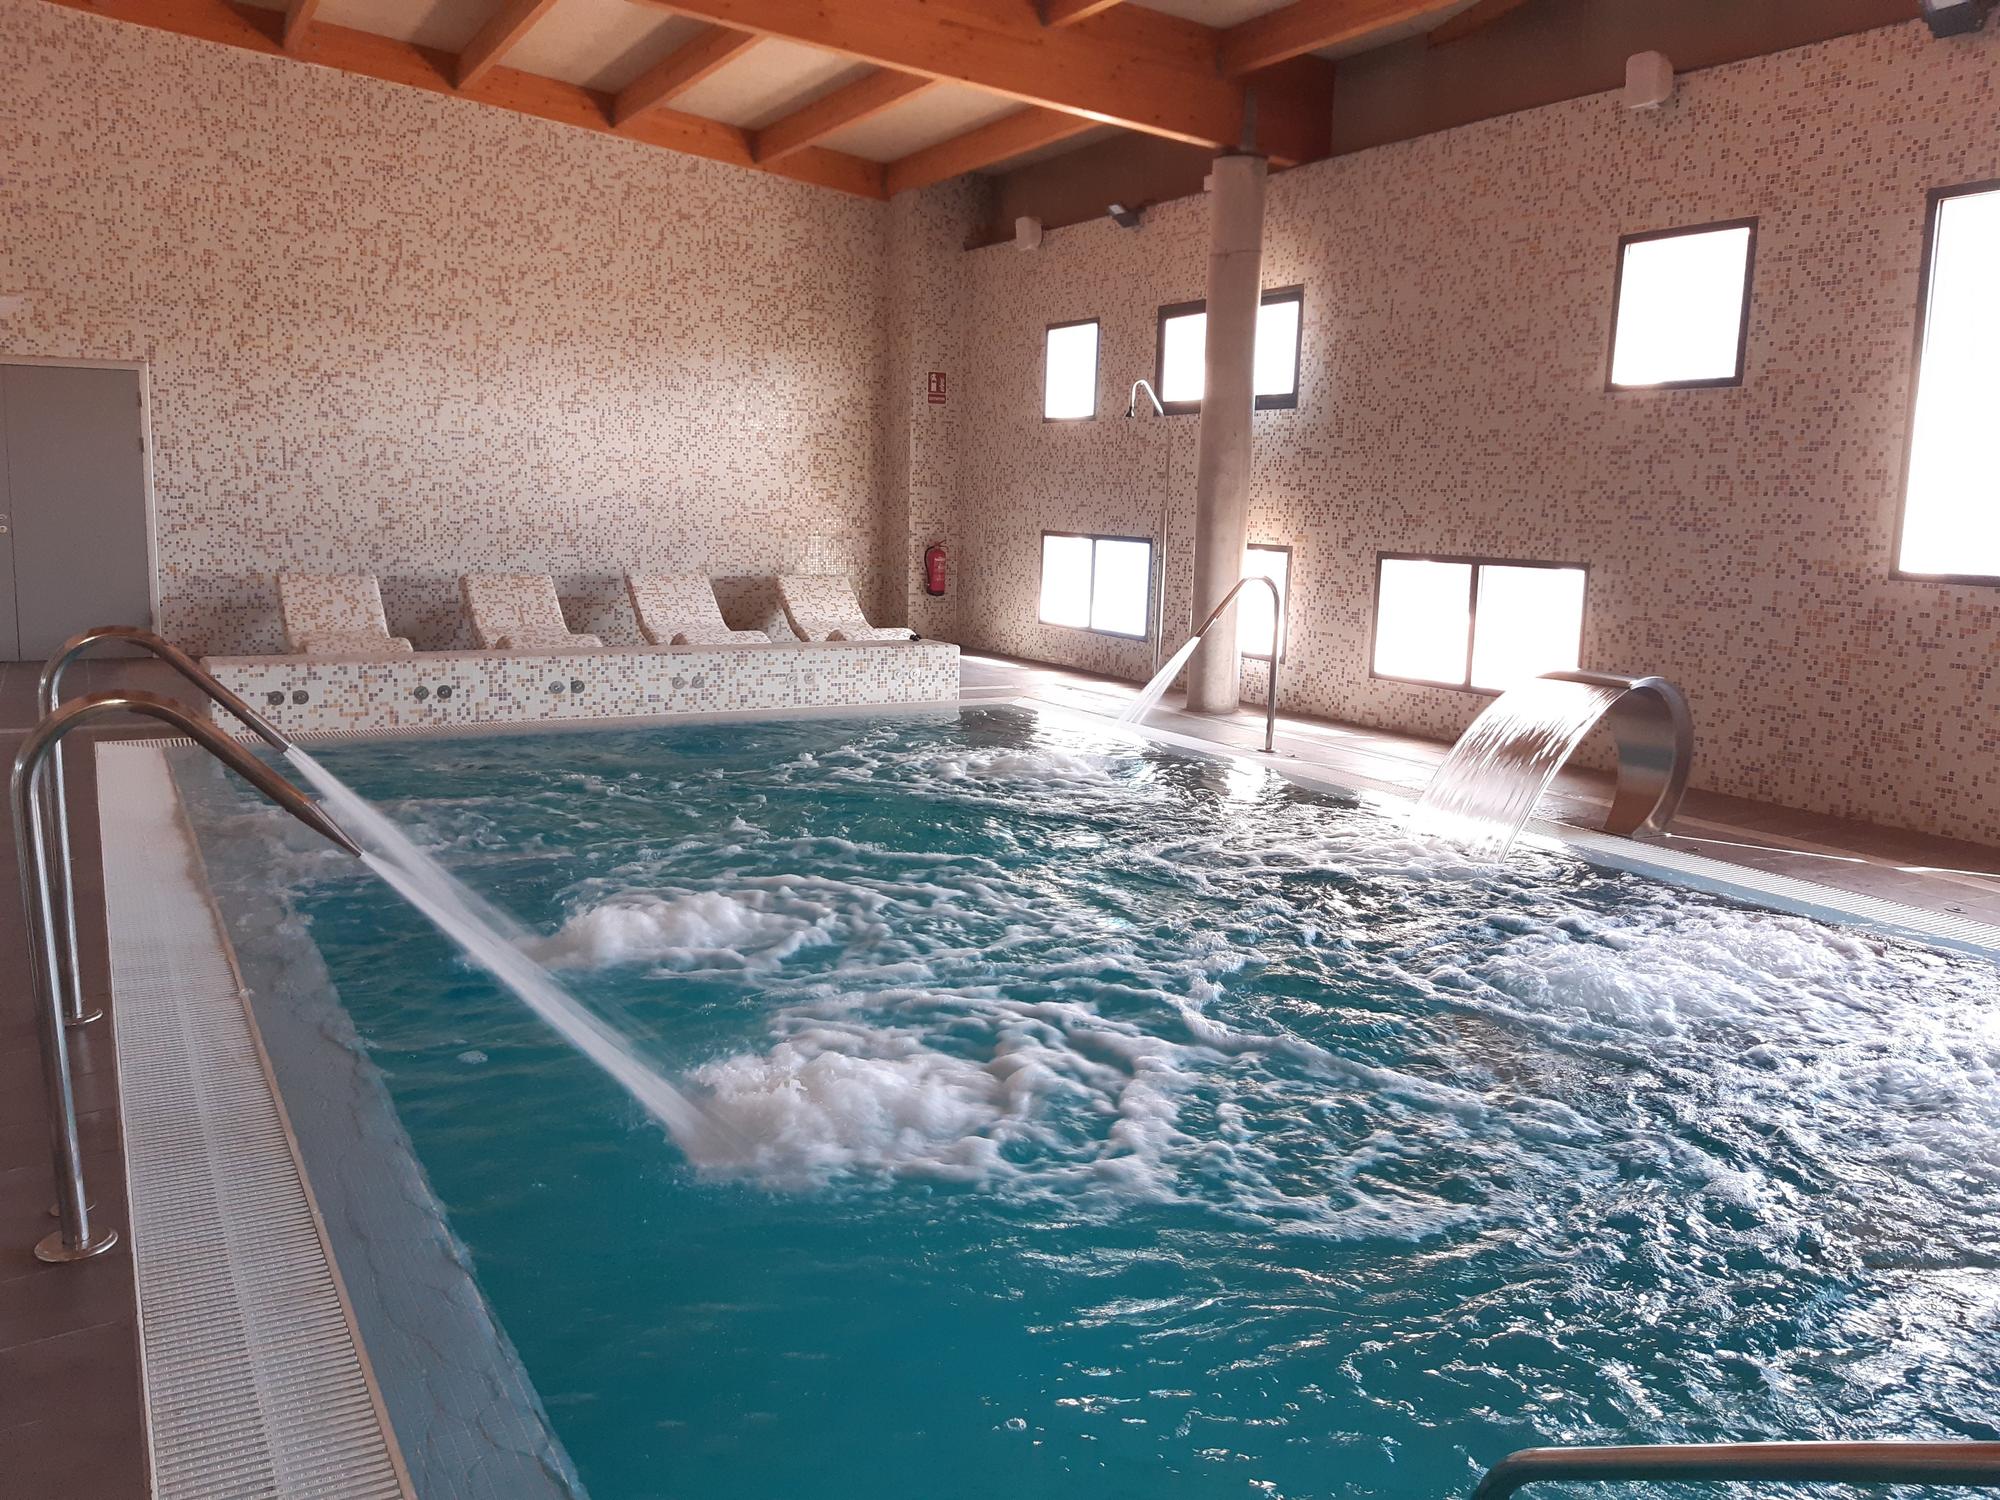 Spa ubicado en la planta baja con una piscina activa.